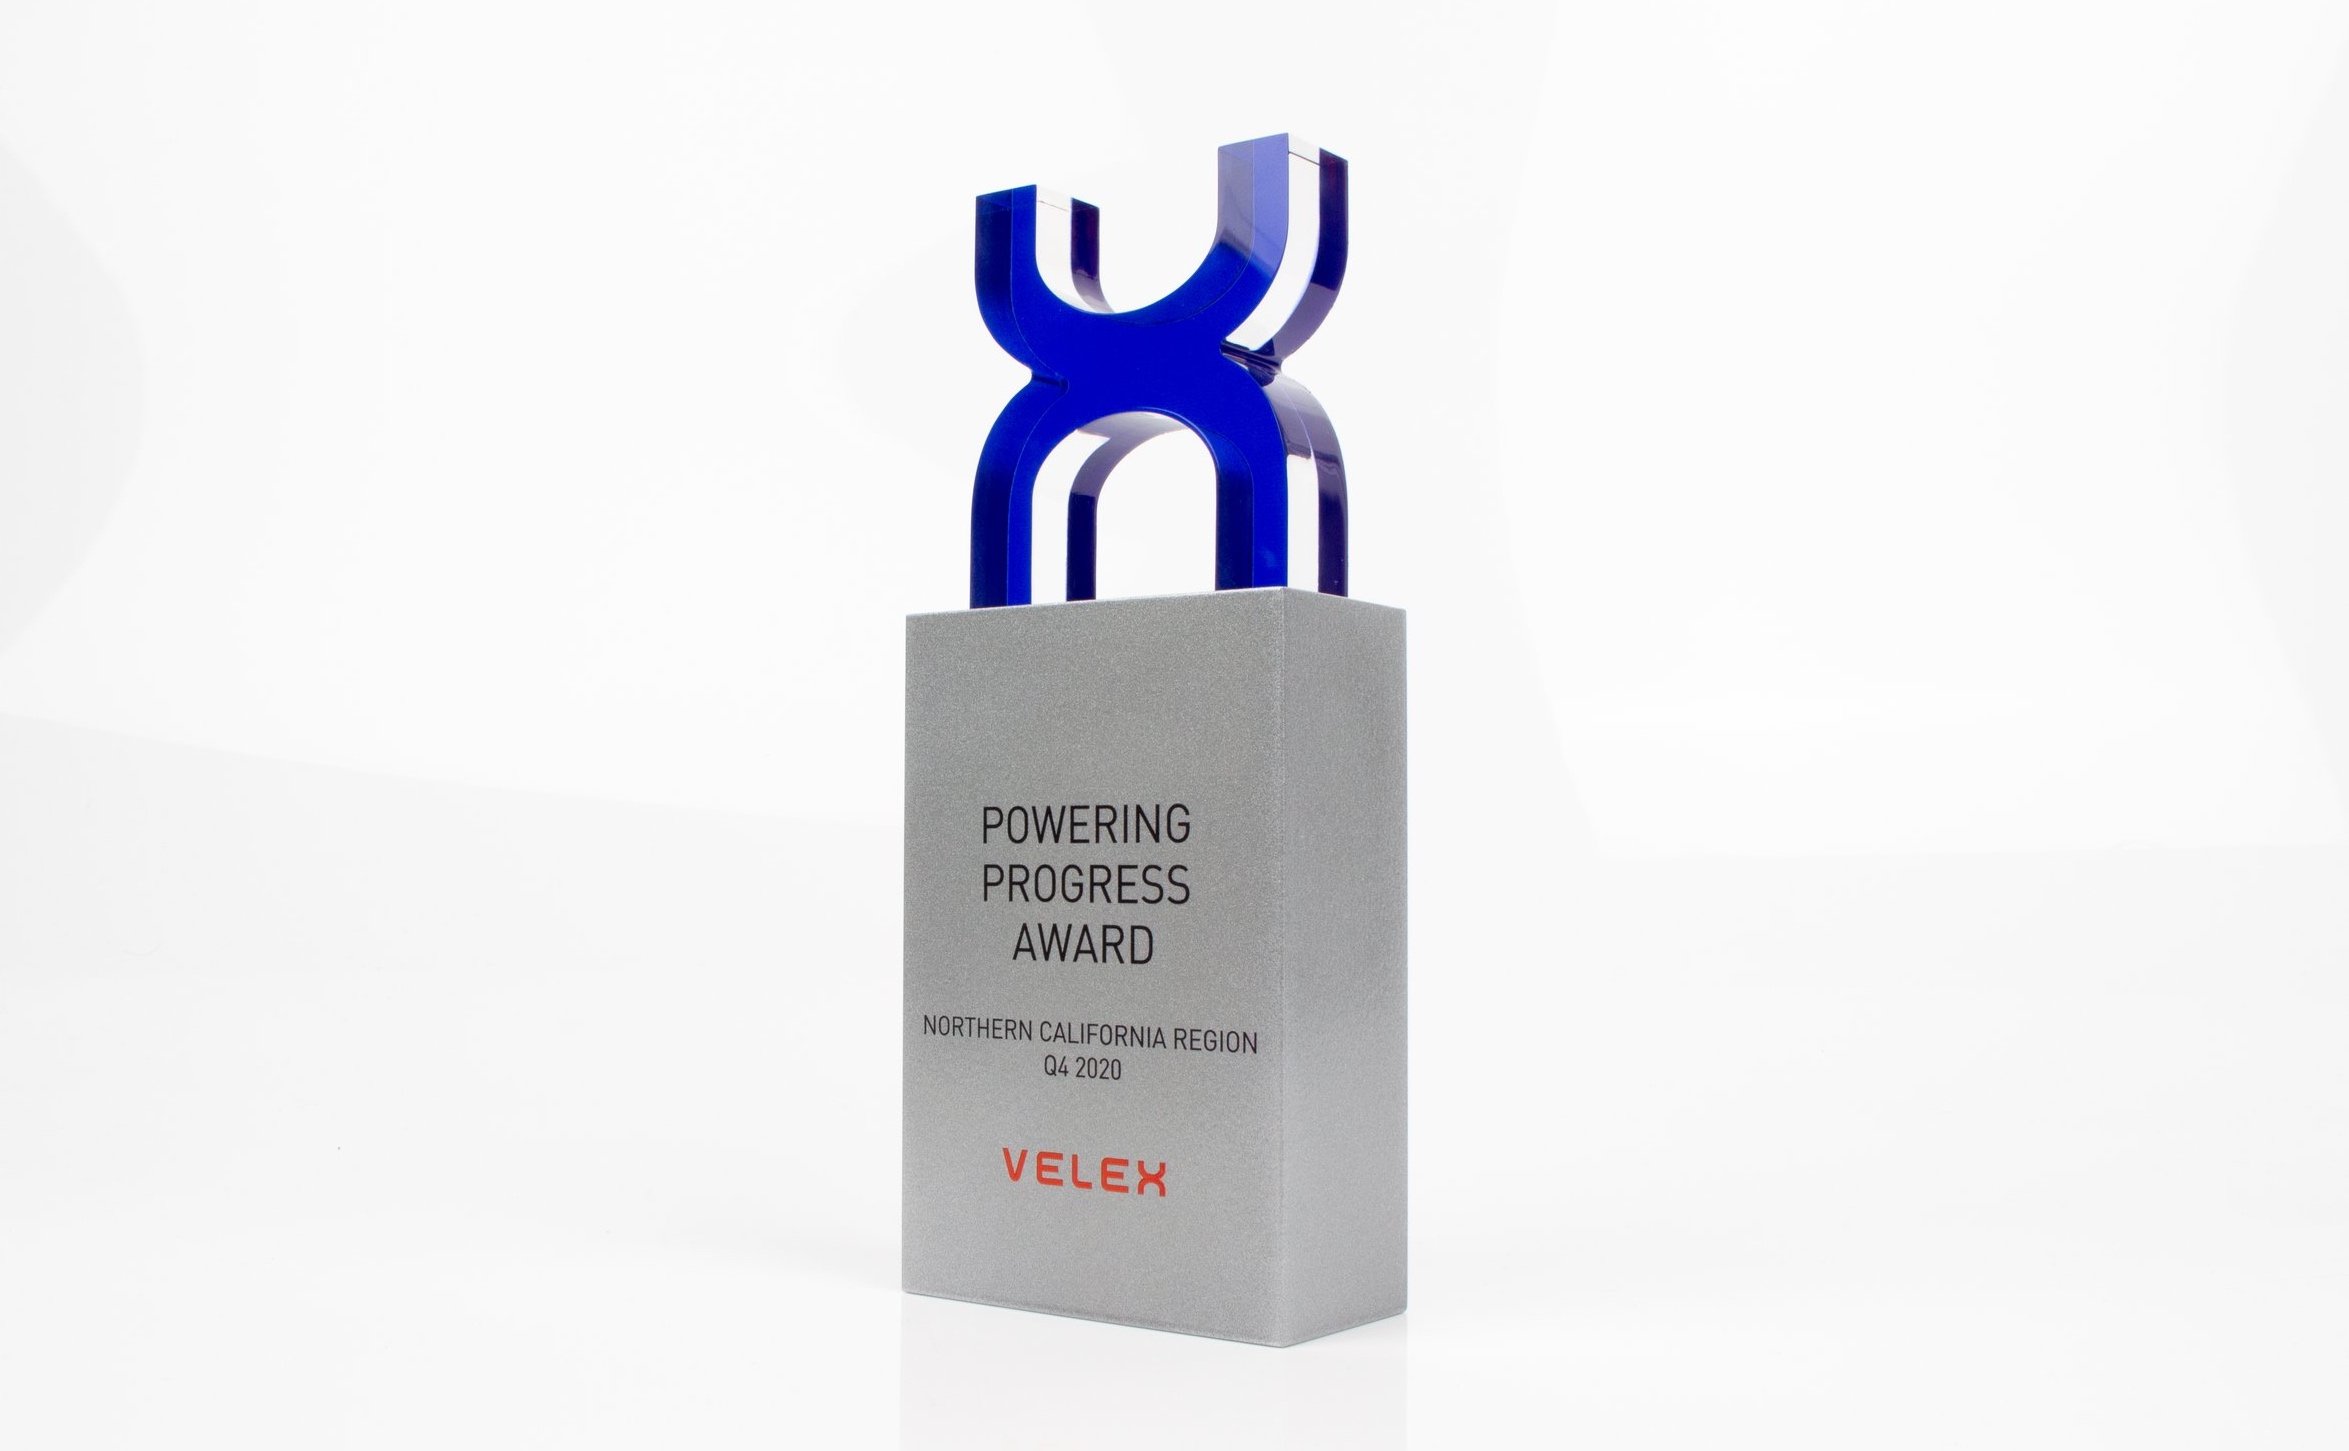 velex powering progress awards custom award 2